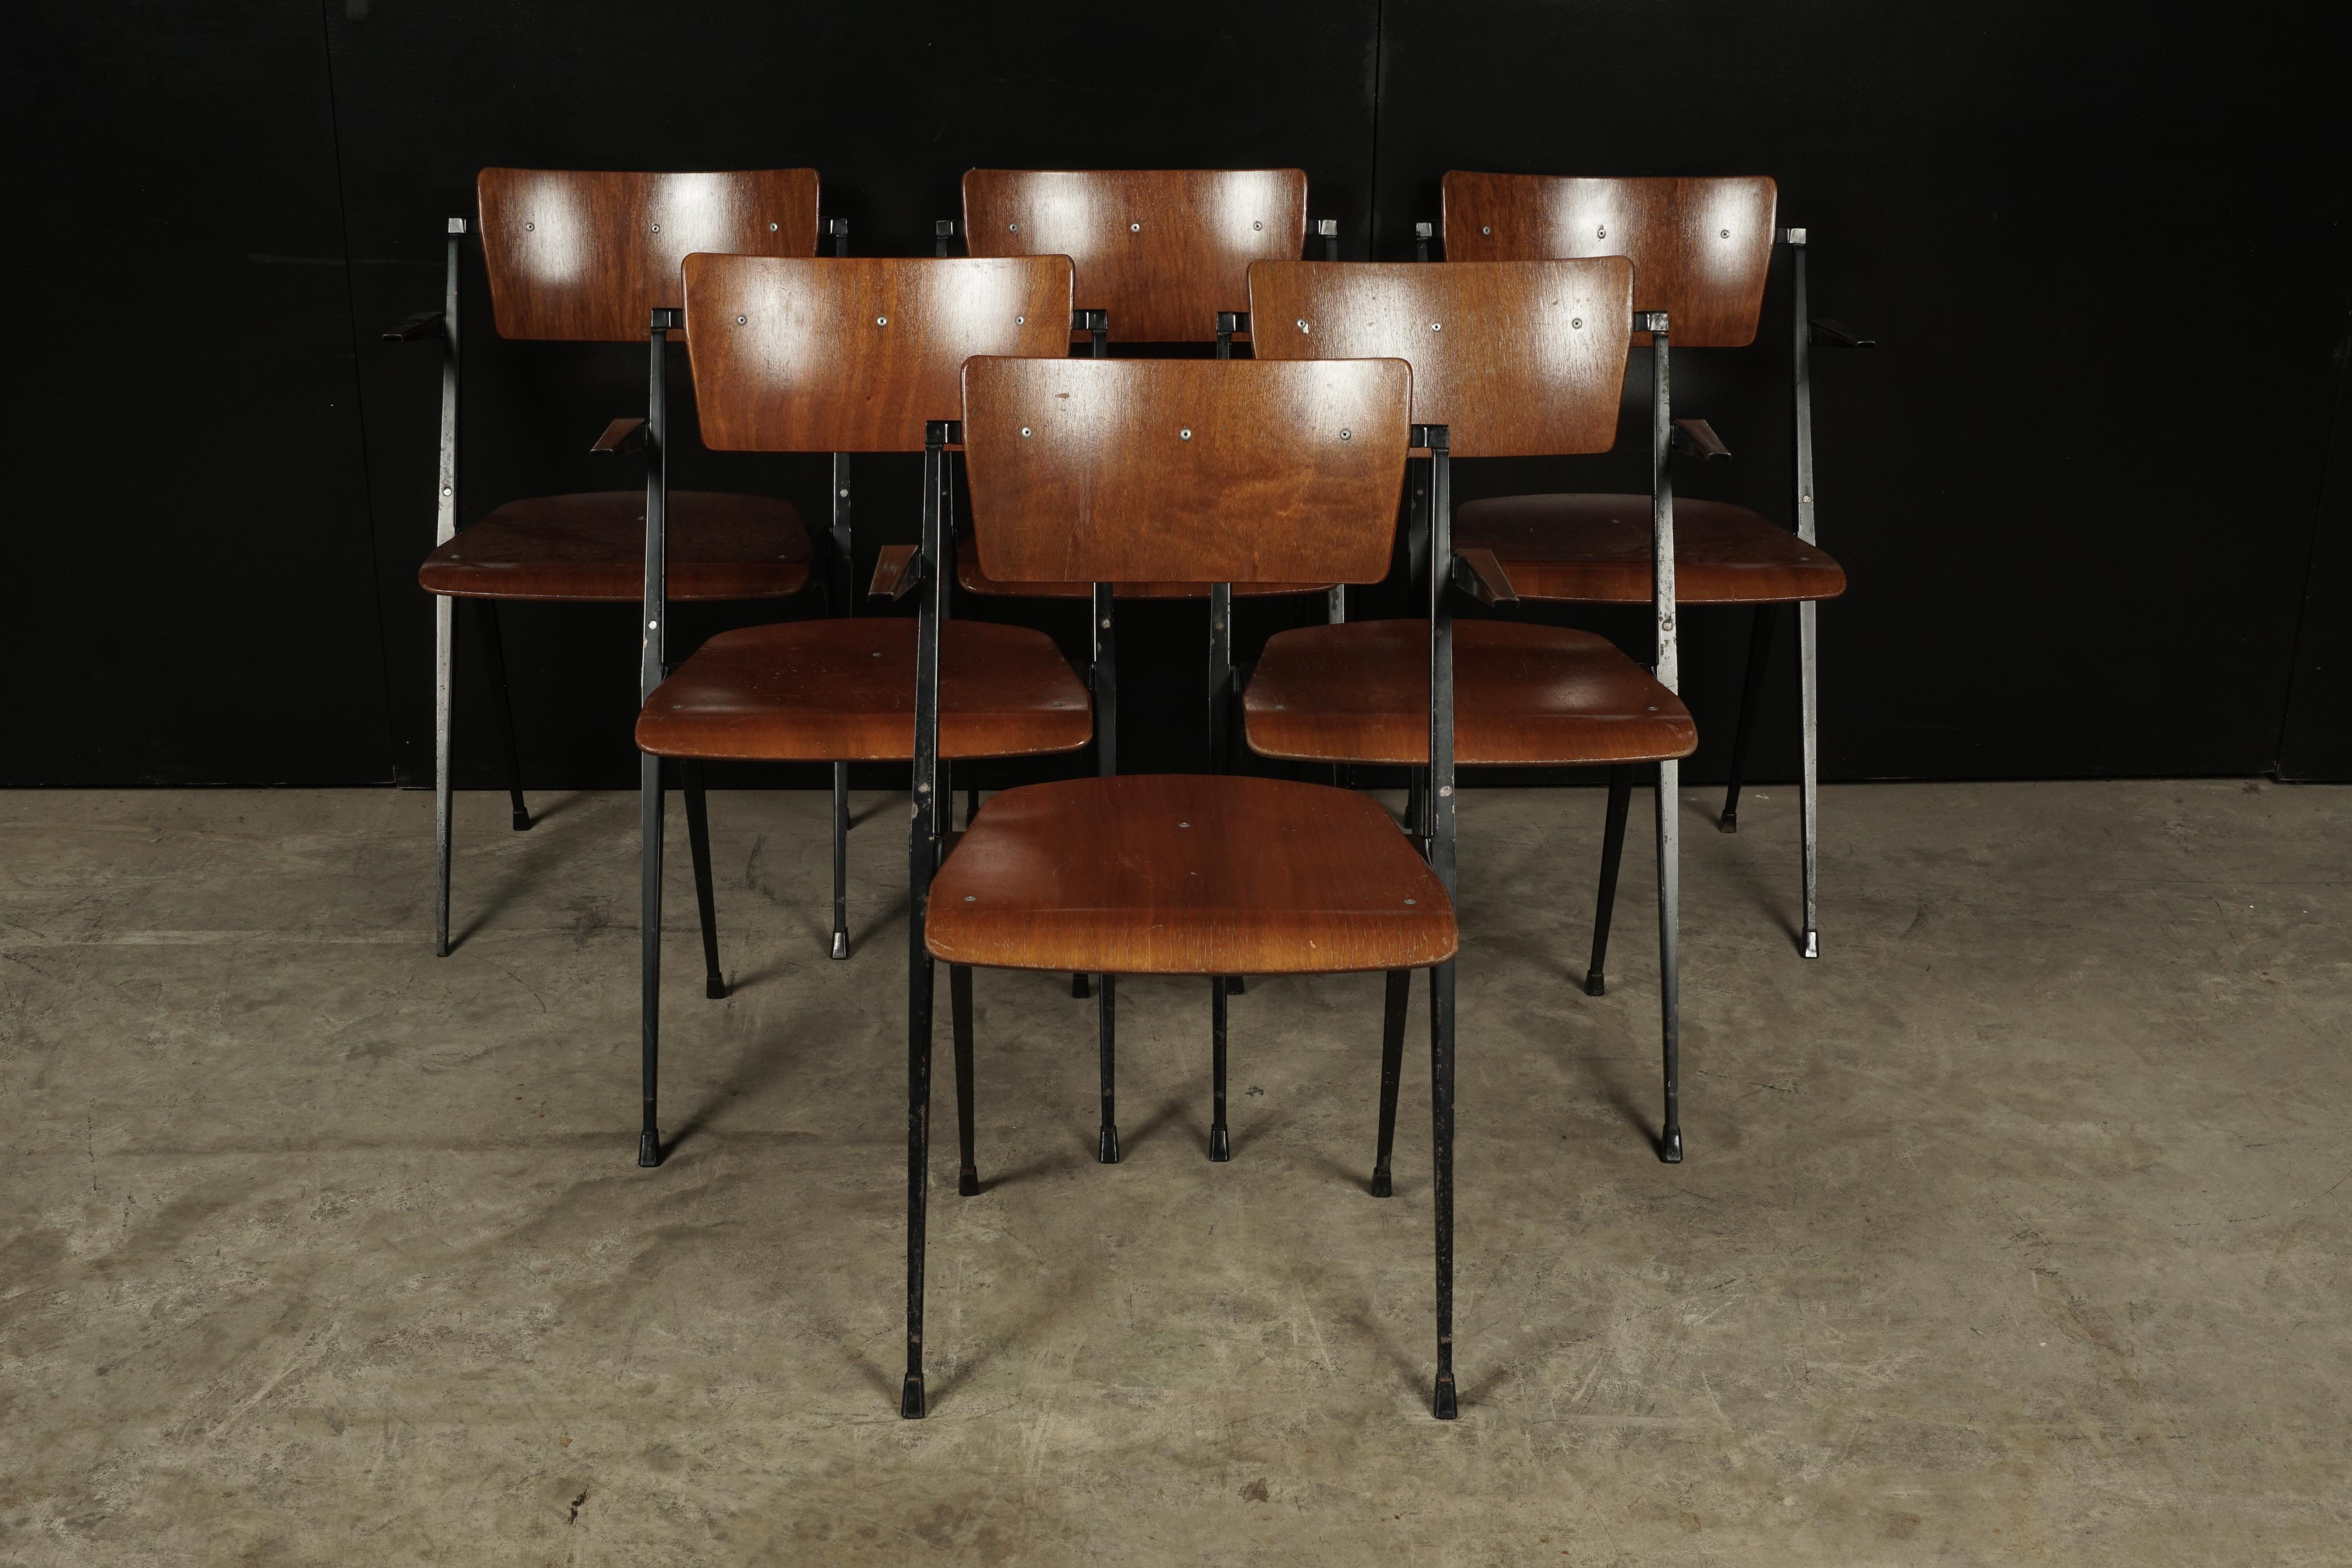 Rare ensemble de six chaises empilables conçu par Wm. Rietveld, vers 1960. Cette chaise rare a remporté un célèbre prix de design 